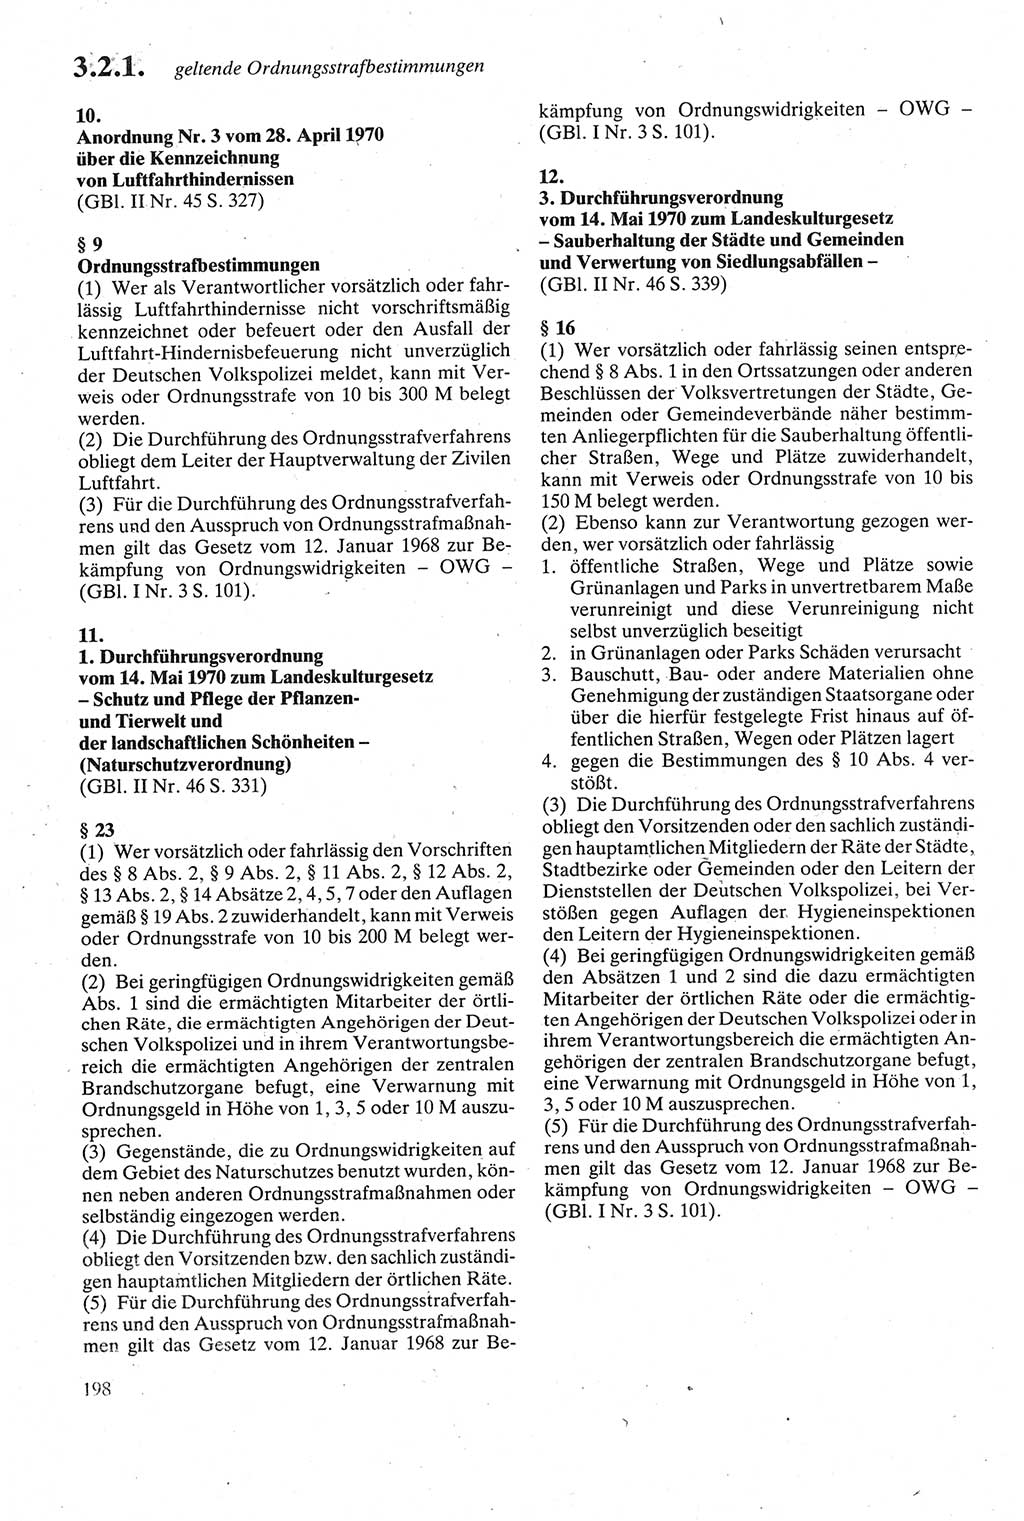 Strafgesetzbuch (StGB) der Deutschen Demokratischen Republik (DDR) sowie angrenzende Gesetze und Bestimmungen 1979, Seite 198 (StGB DDR Ges. Best. 1979, S. 198)